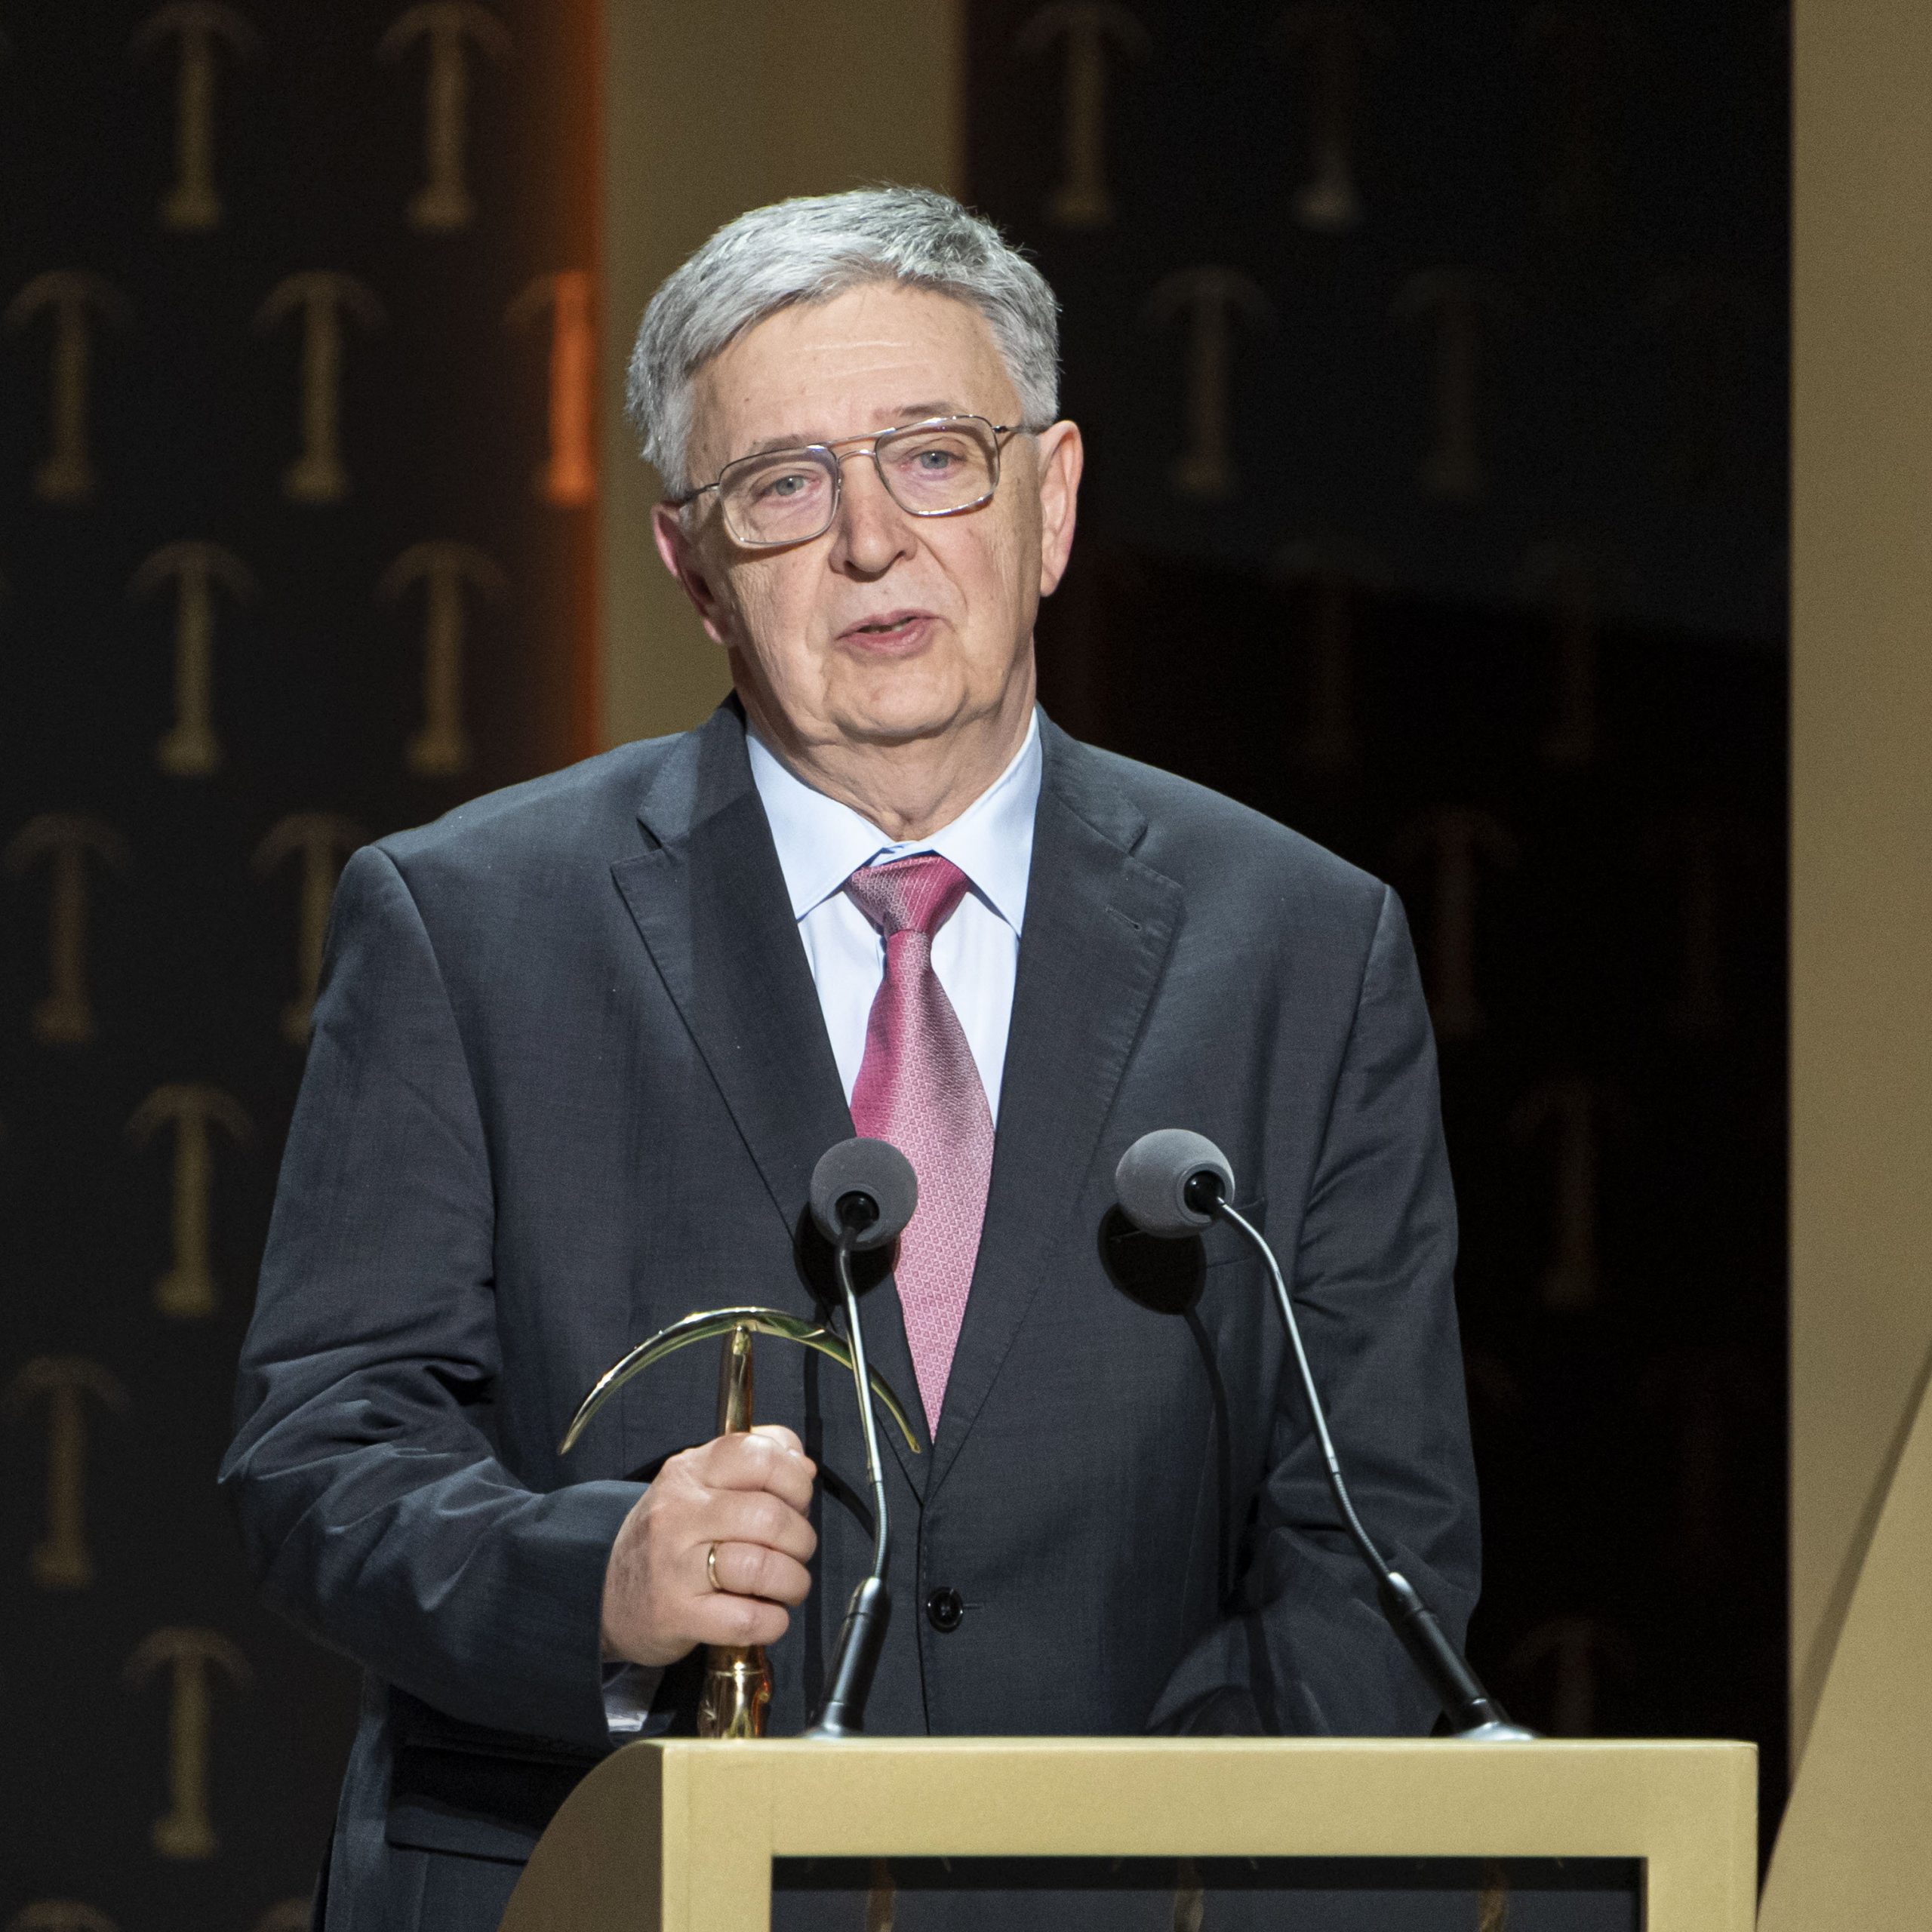 László Lovász receives the Prima Primissima award